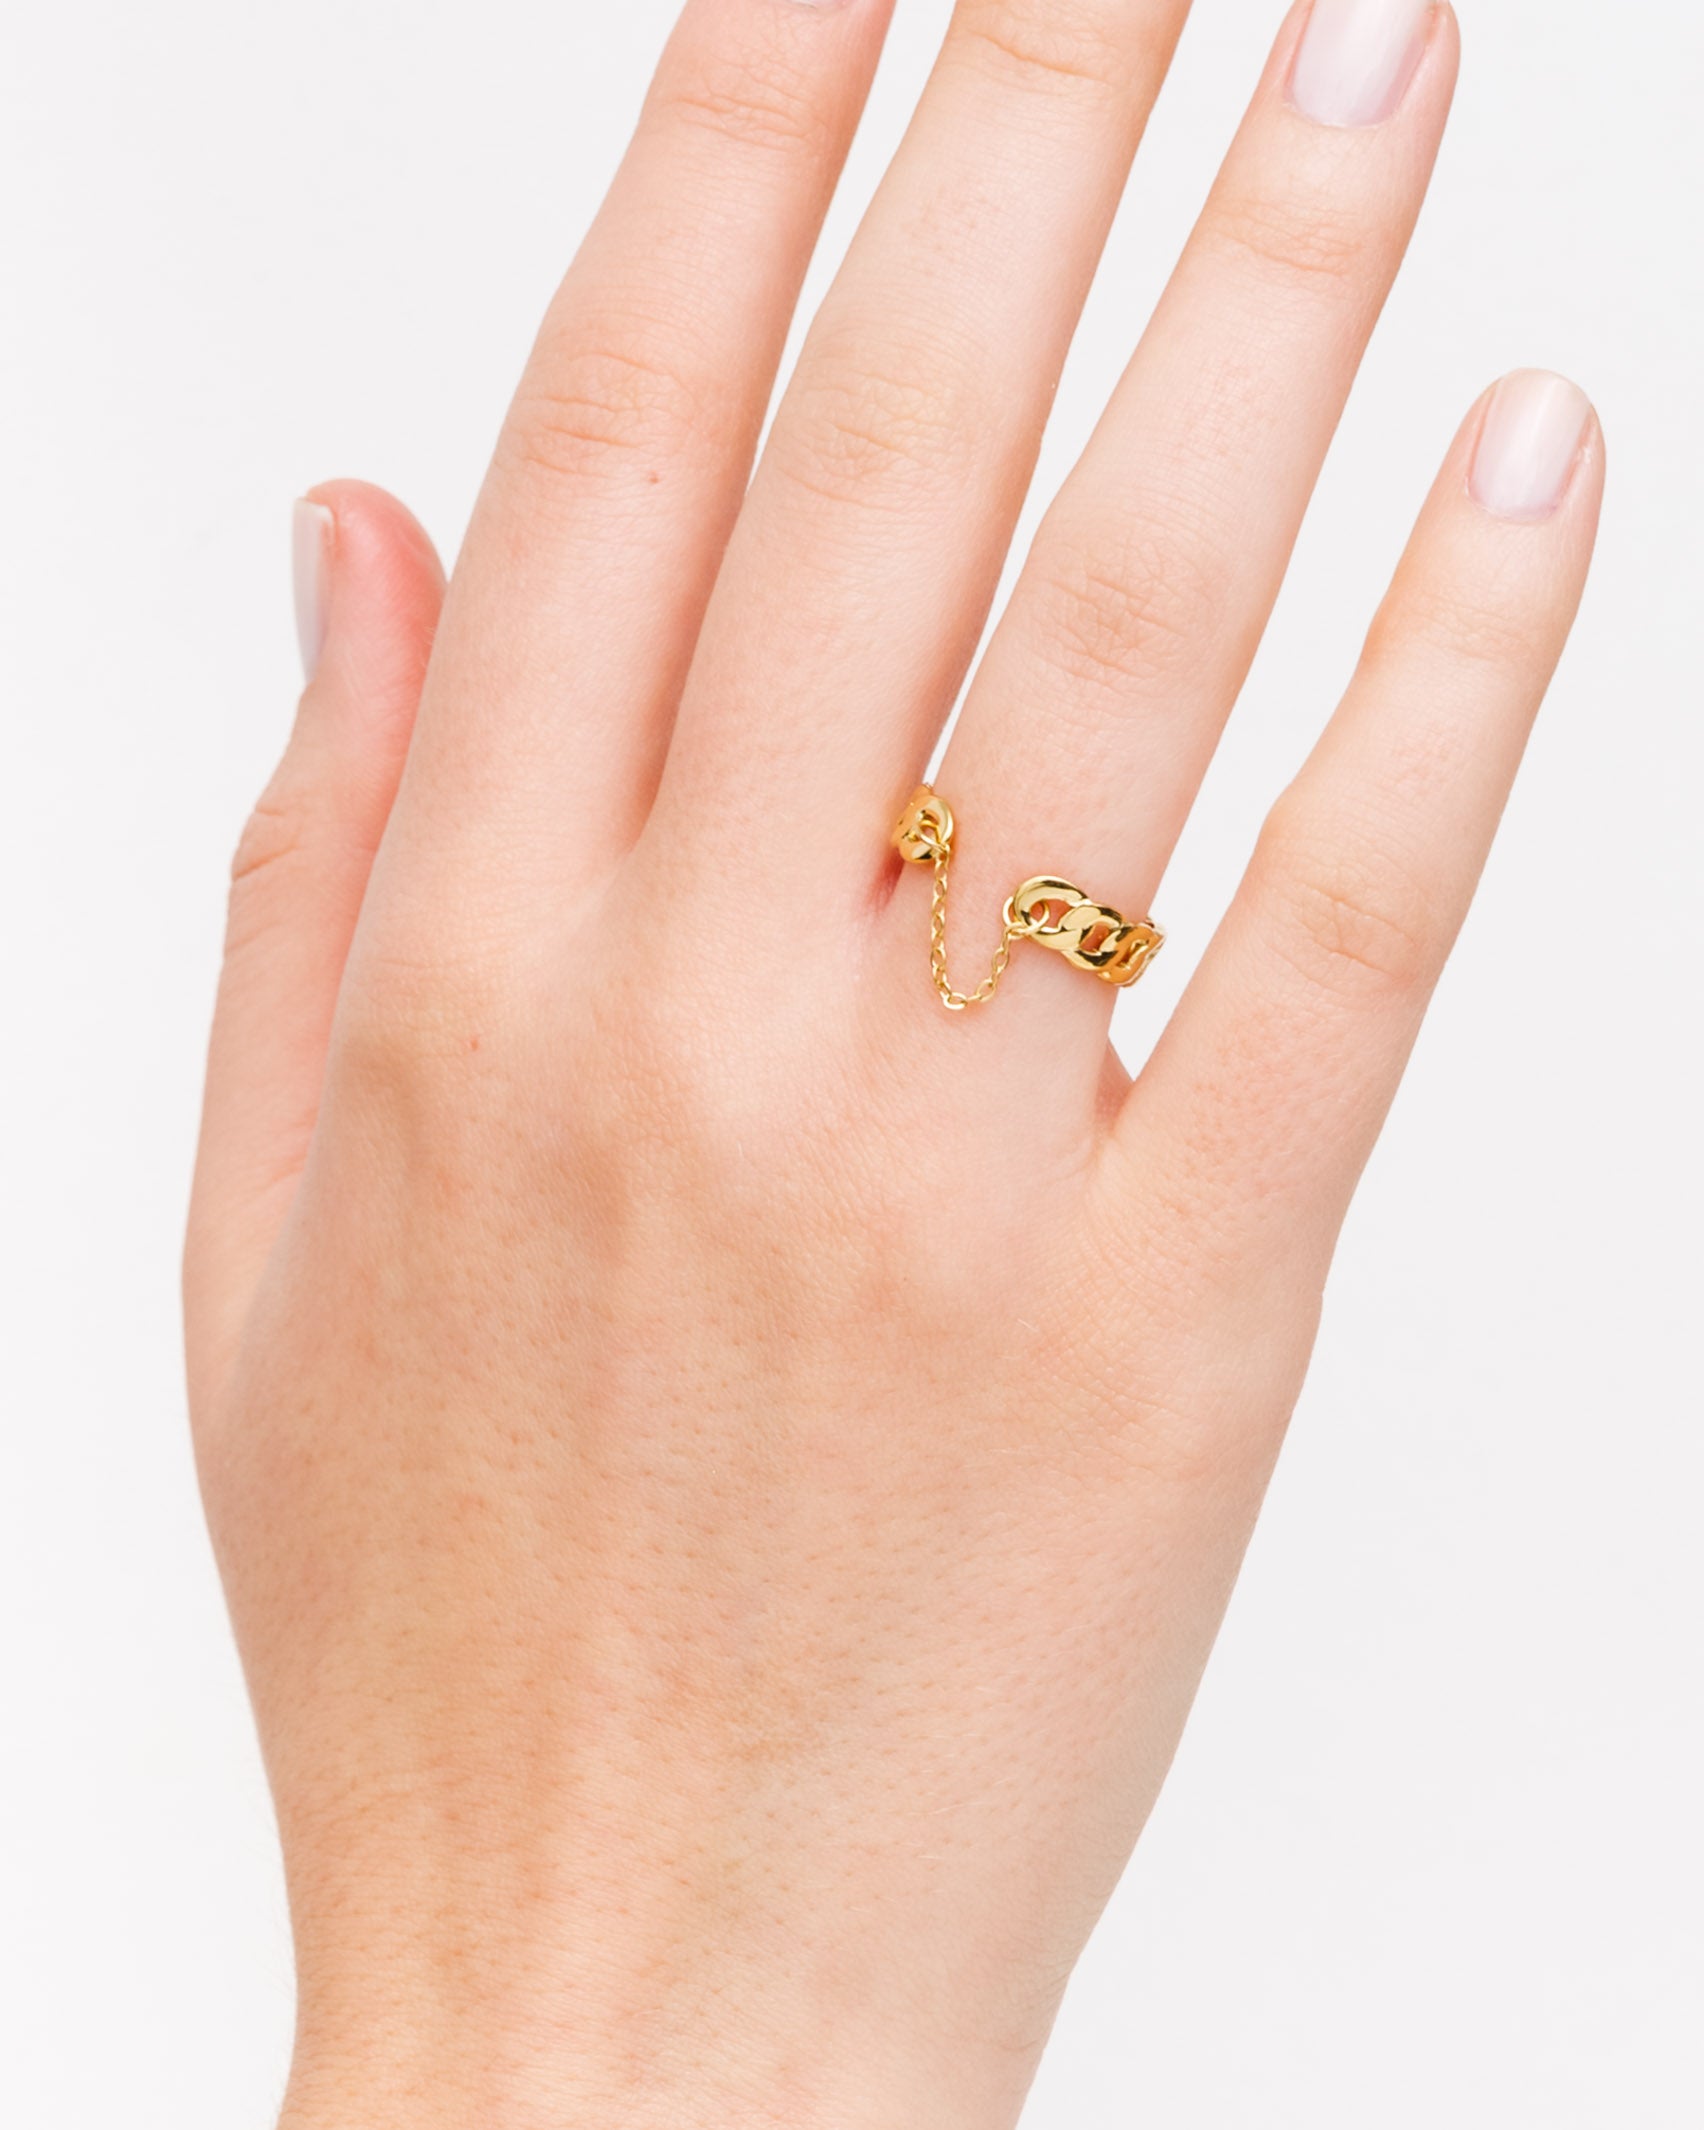 Gliederketten Ring mit Kette - Broke + Schön#farbe_gold-colored